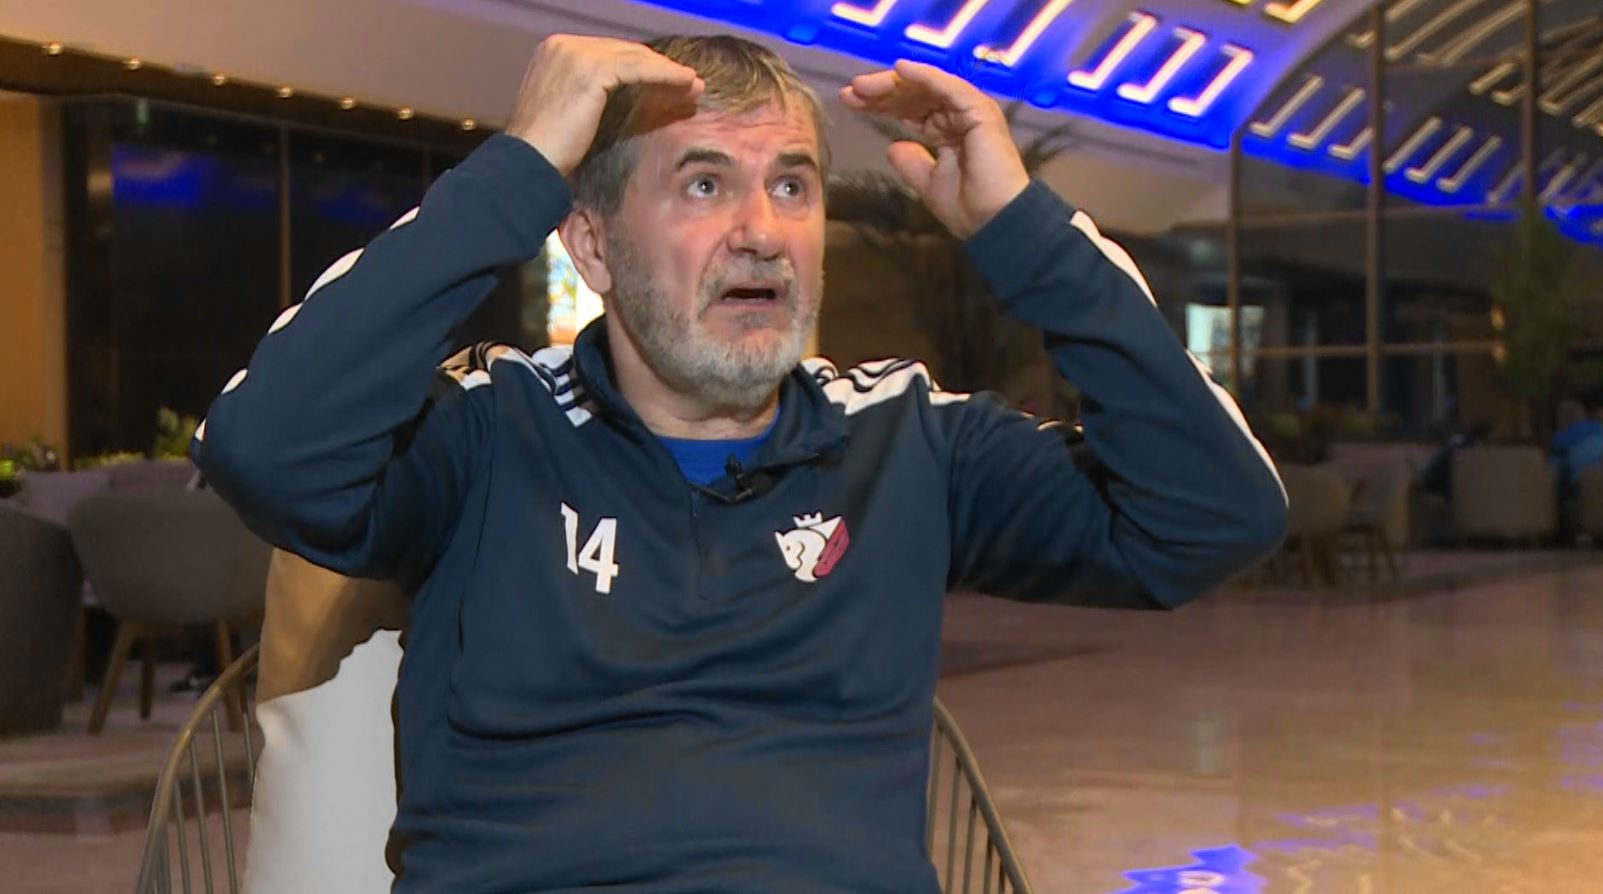 Valeriu Iftime, convins că FC Botoșani nu va retrograda, după victoria cu Dinamo. ”O adrenalină incredibilă”